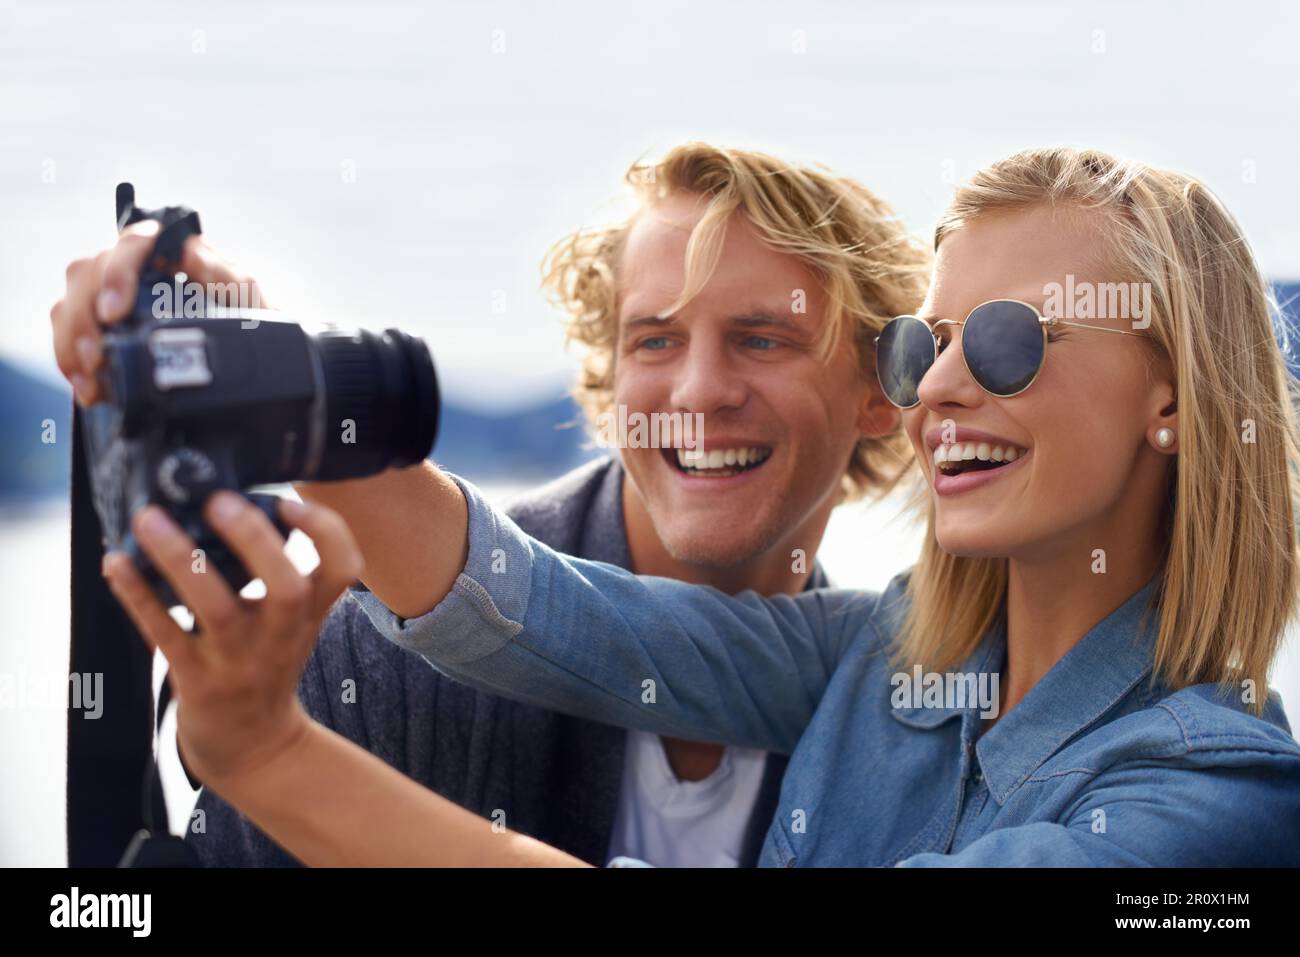 Halten Sie Liebesmomente in der freien Natur fest. Ein Foto von einem jungen Paar, das ein Selbstporträt auf einem Road Trip macht. Stockfoto